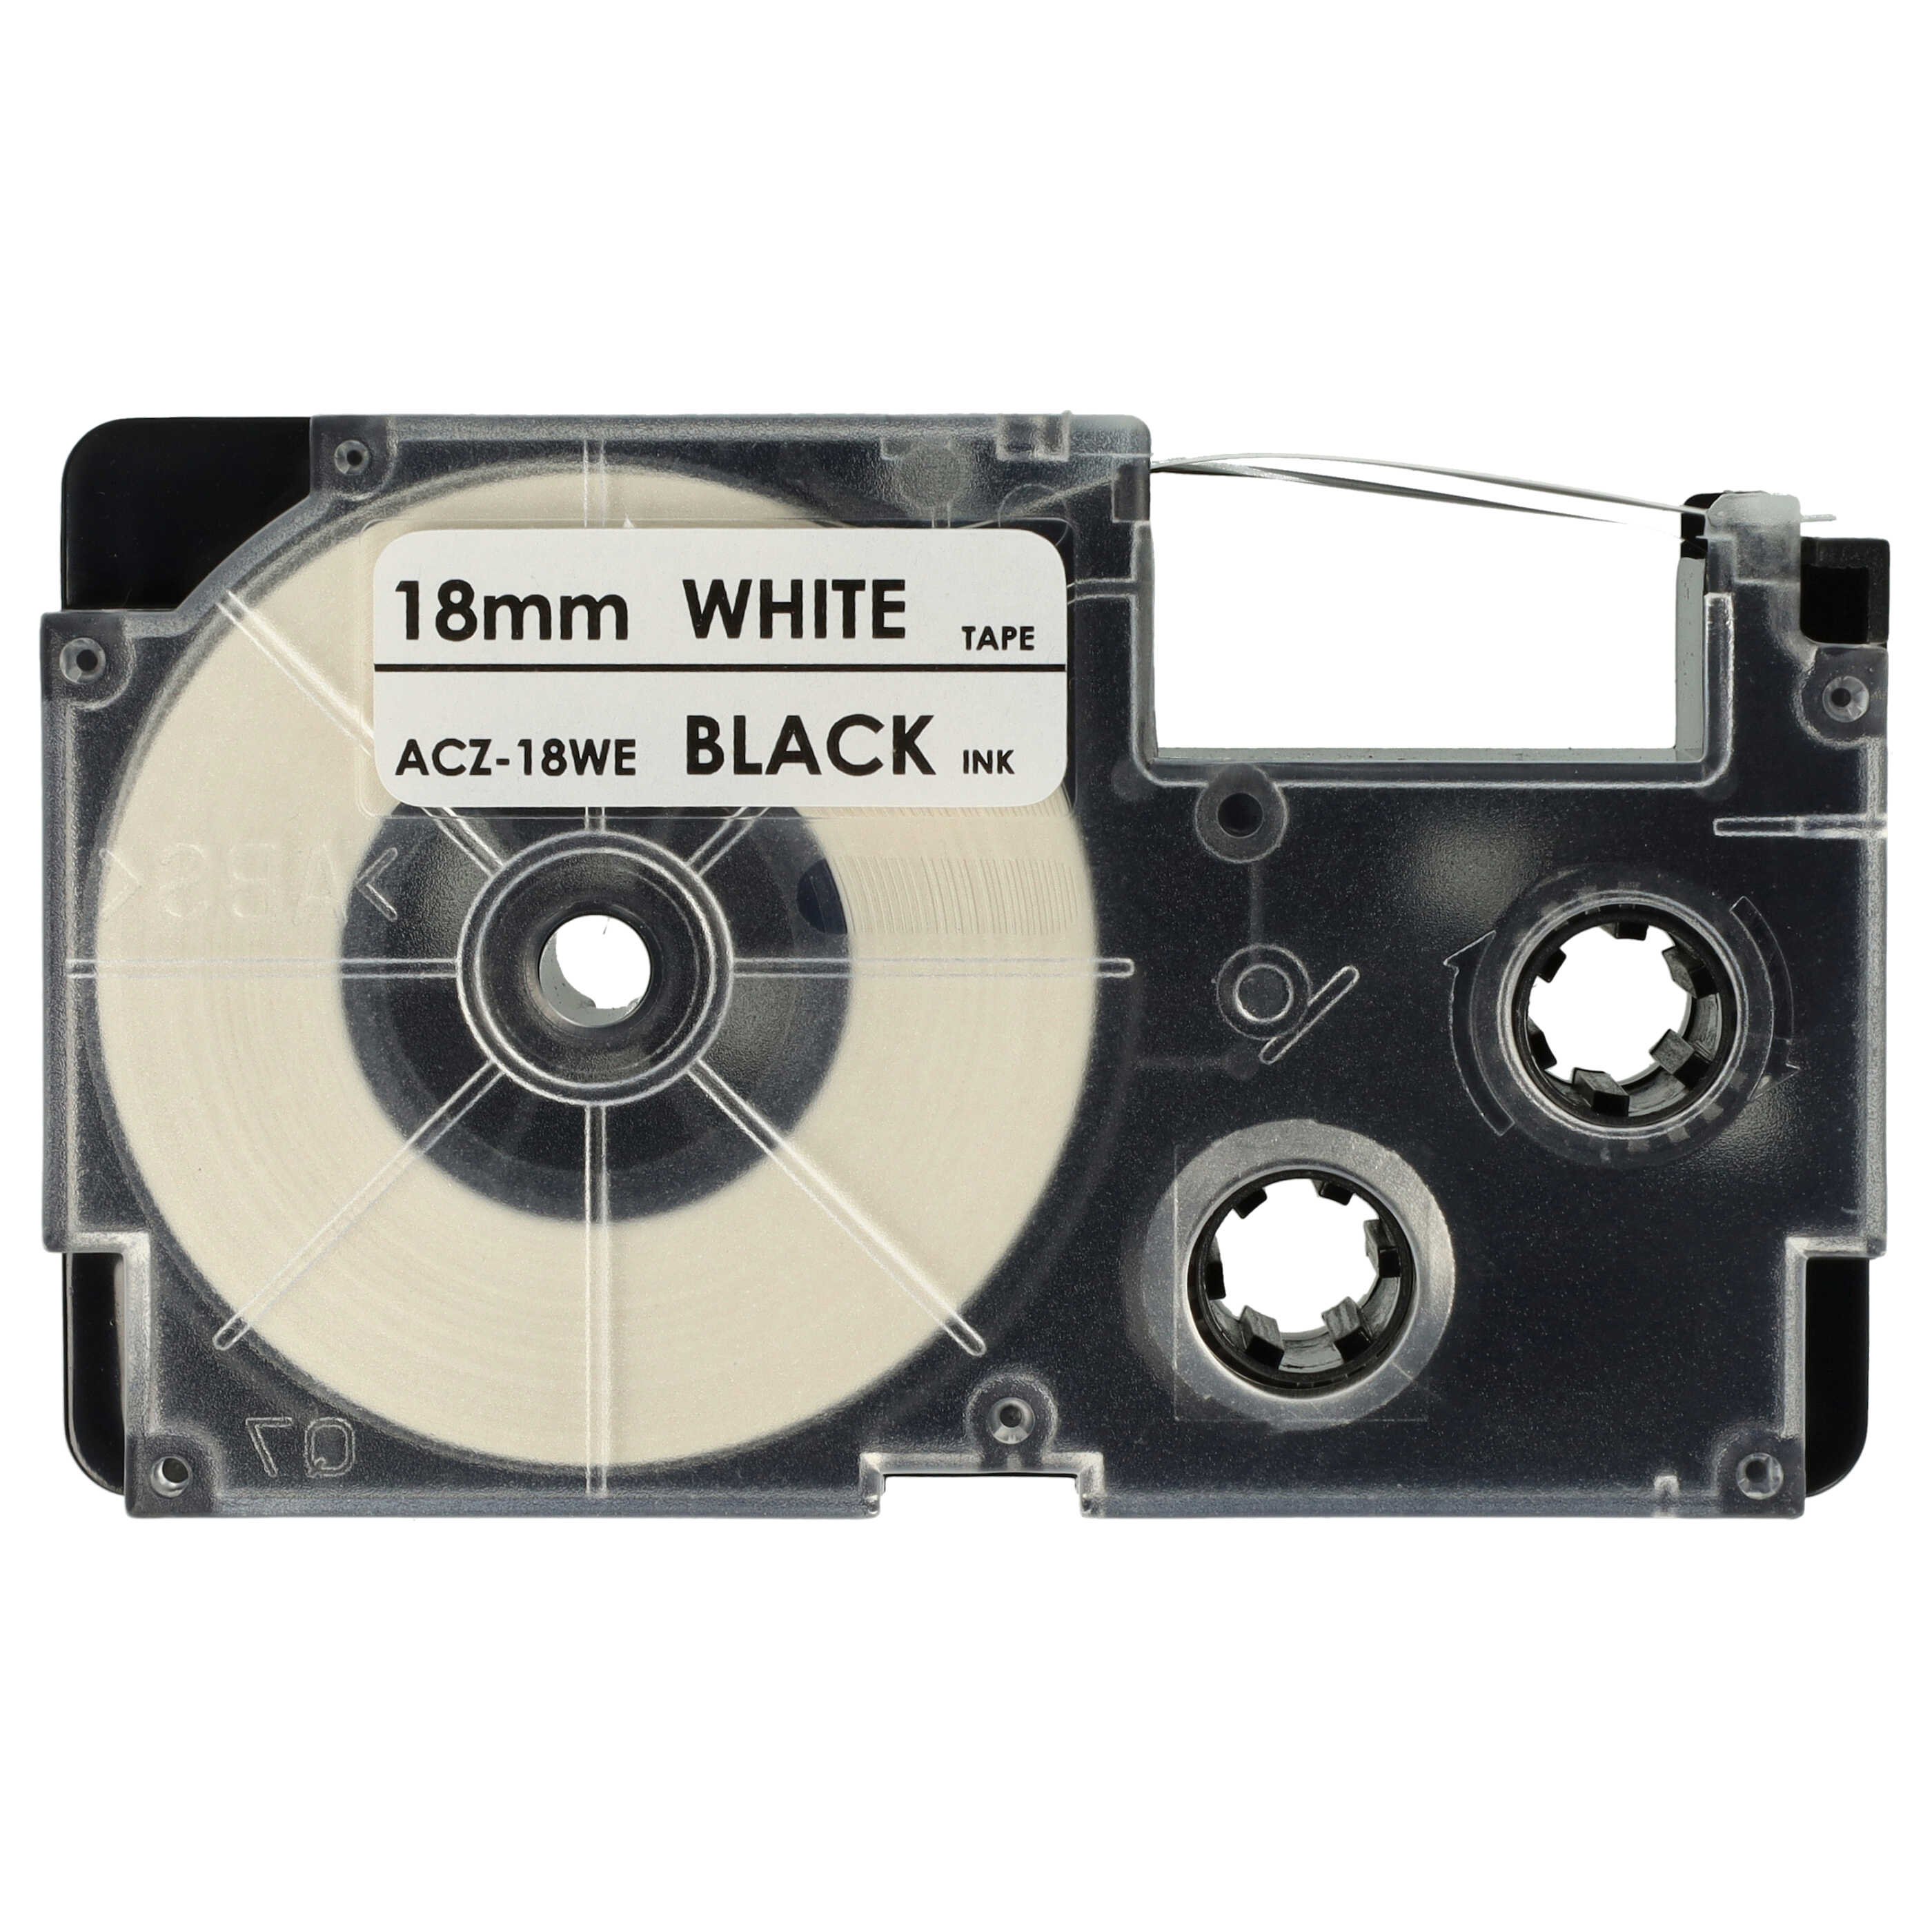 Cassette à ruban remplace Casio XR-18WE, XR-18WE1 - 18mm lettrage Noir ruban Blanc, pet+ RESIN